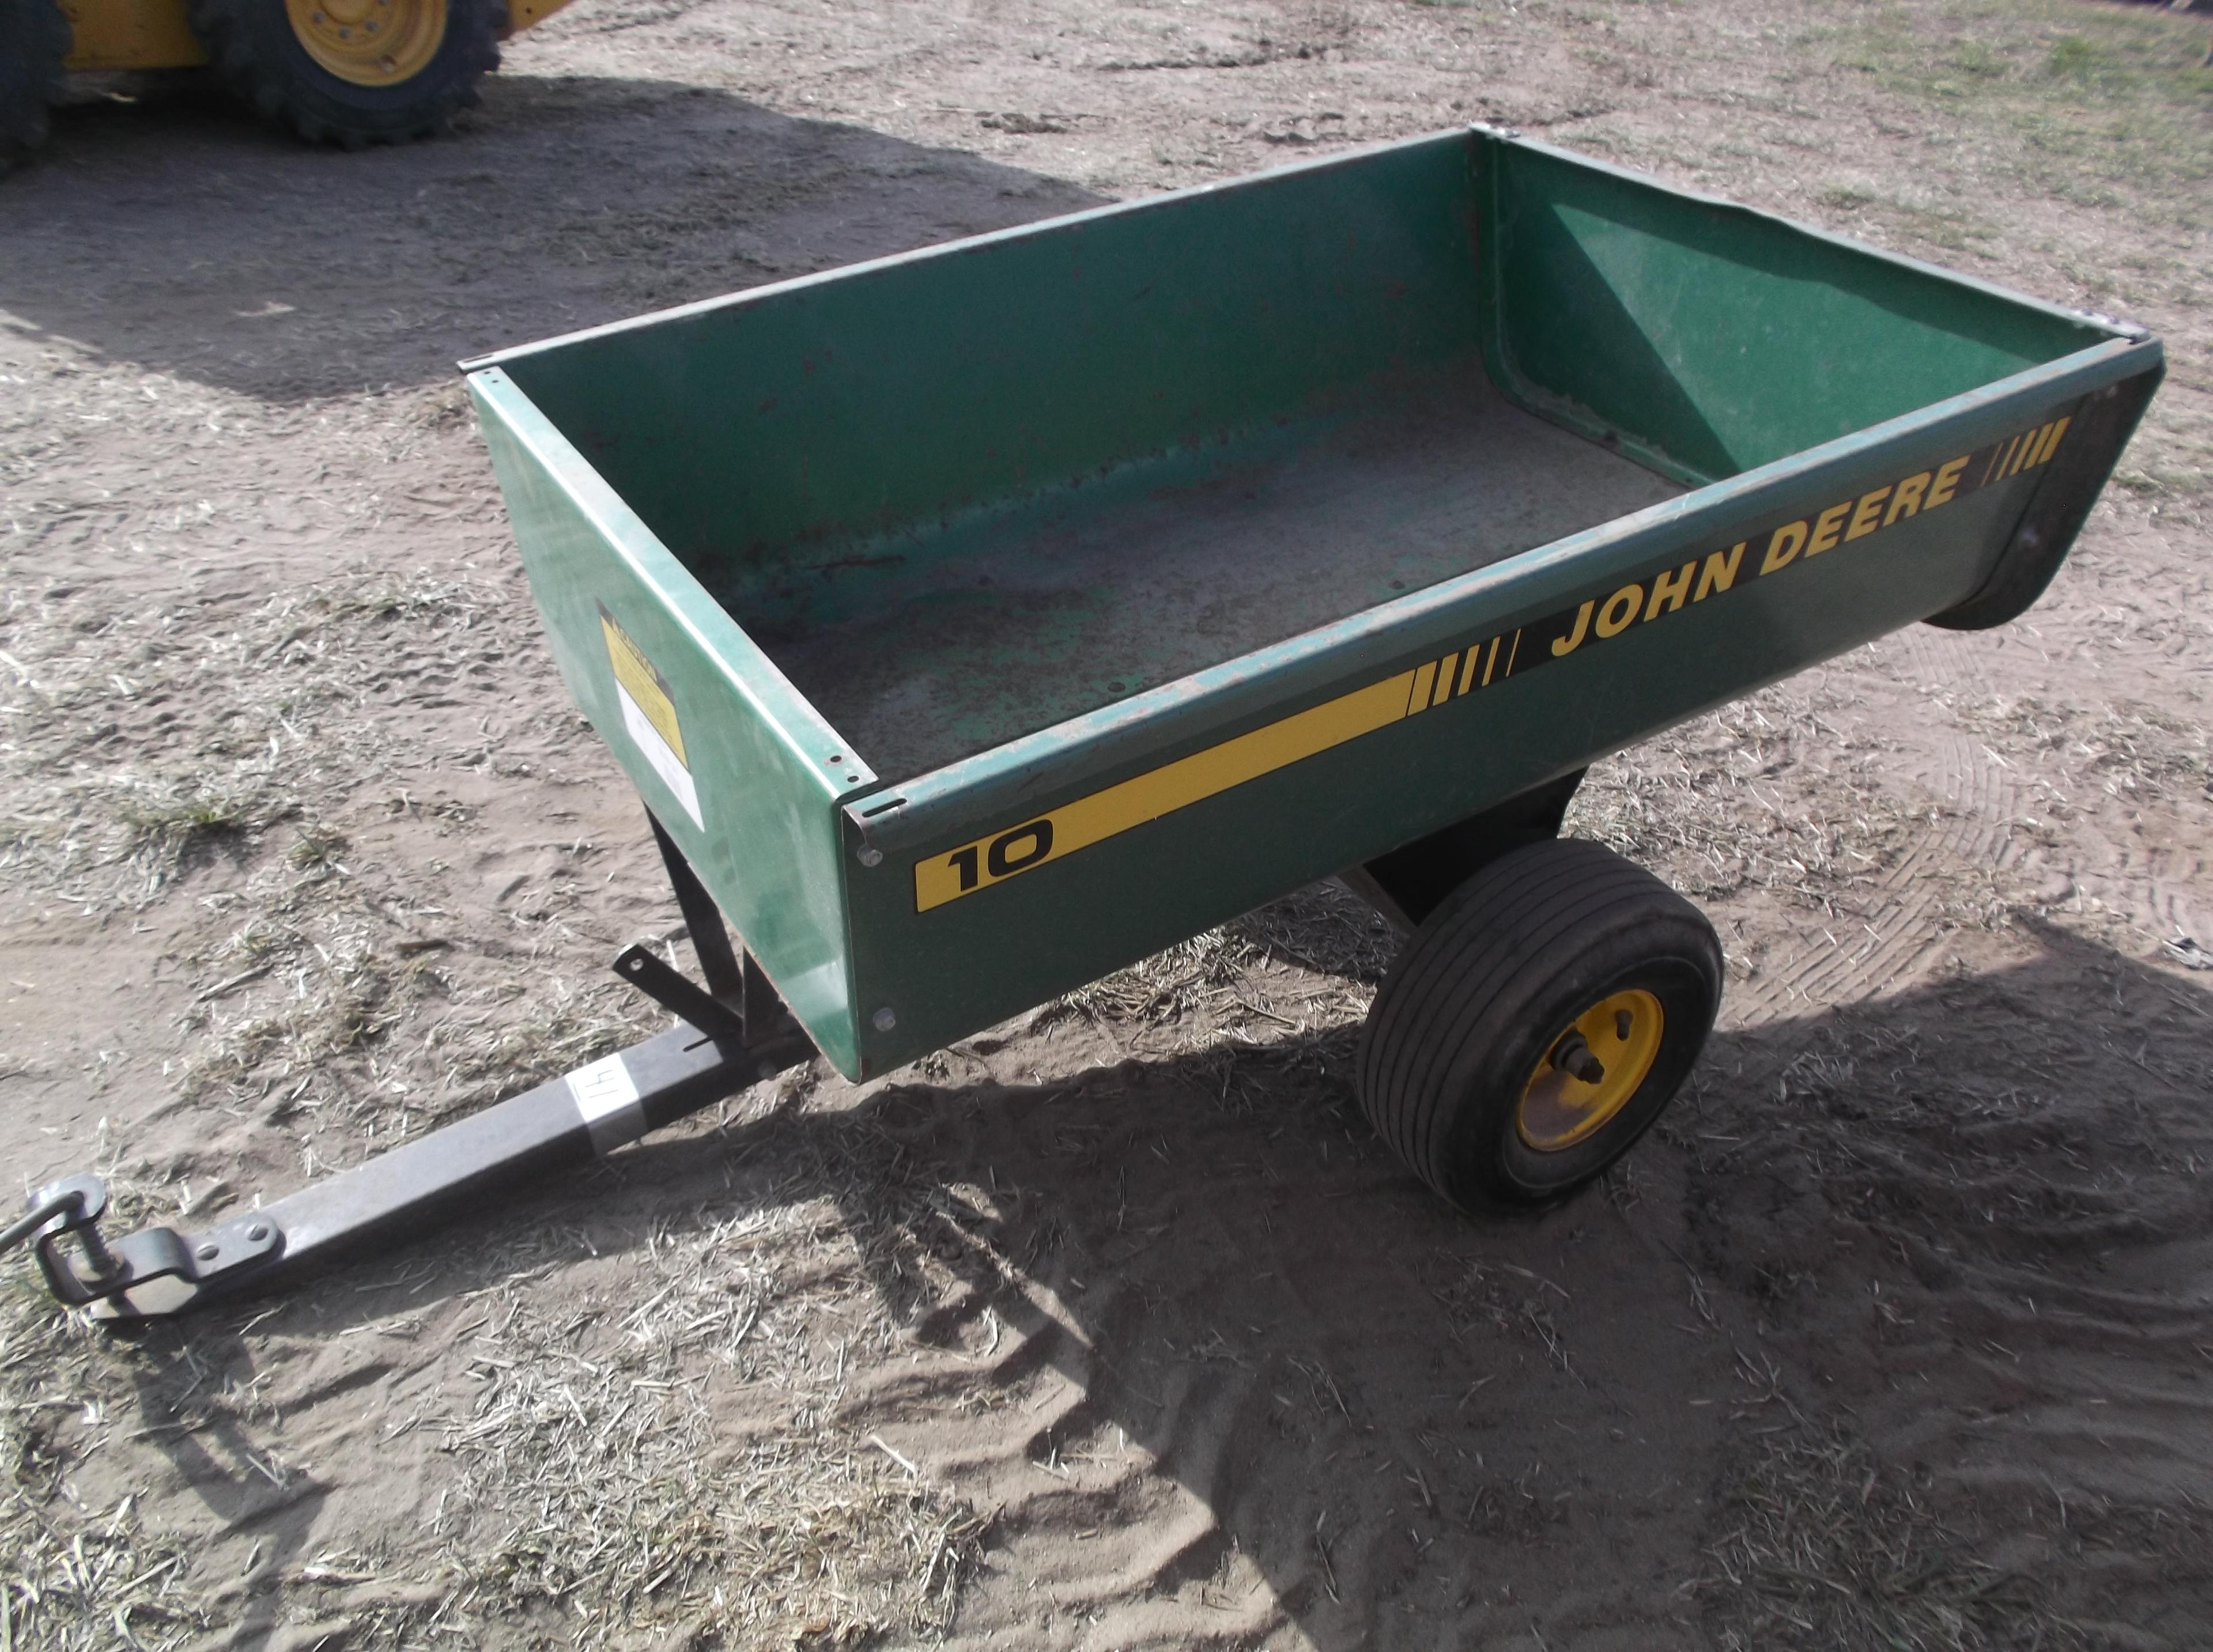 John Deere Model 10 Yard Cart